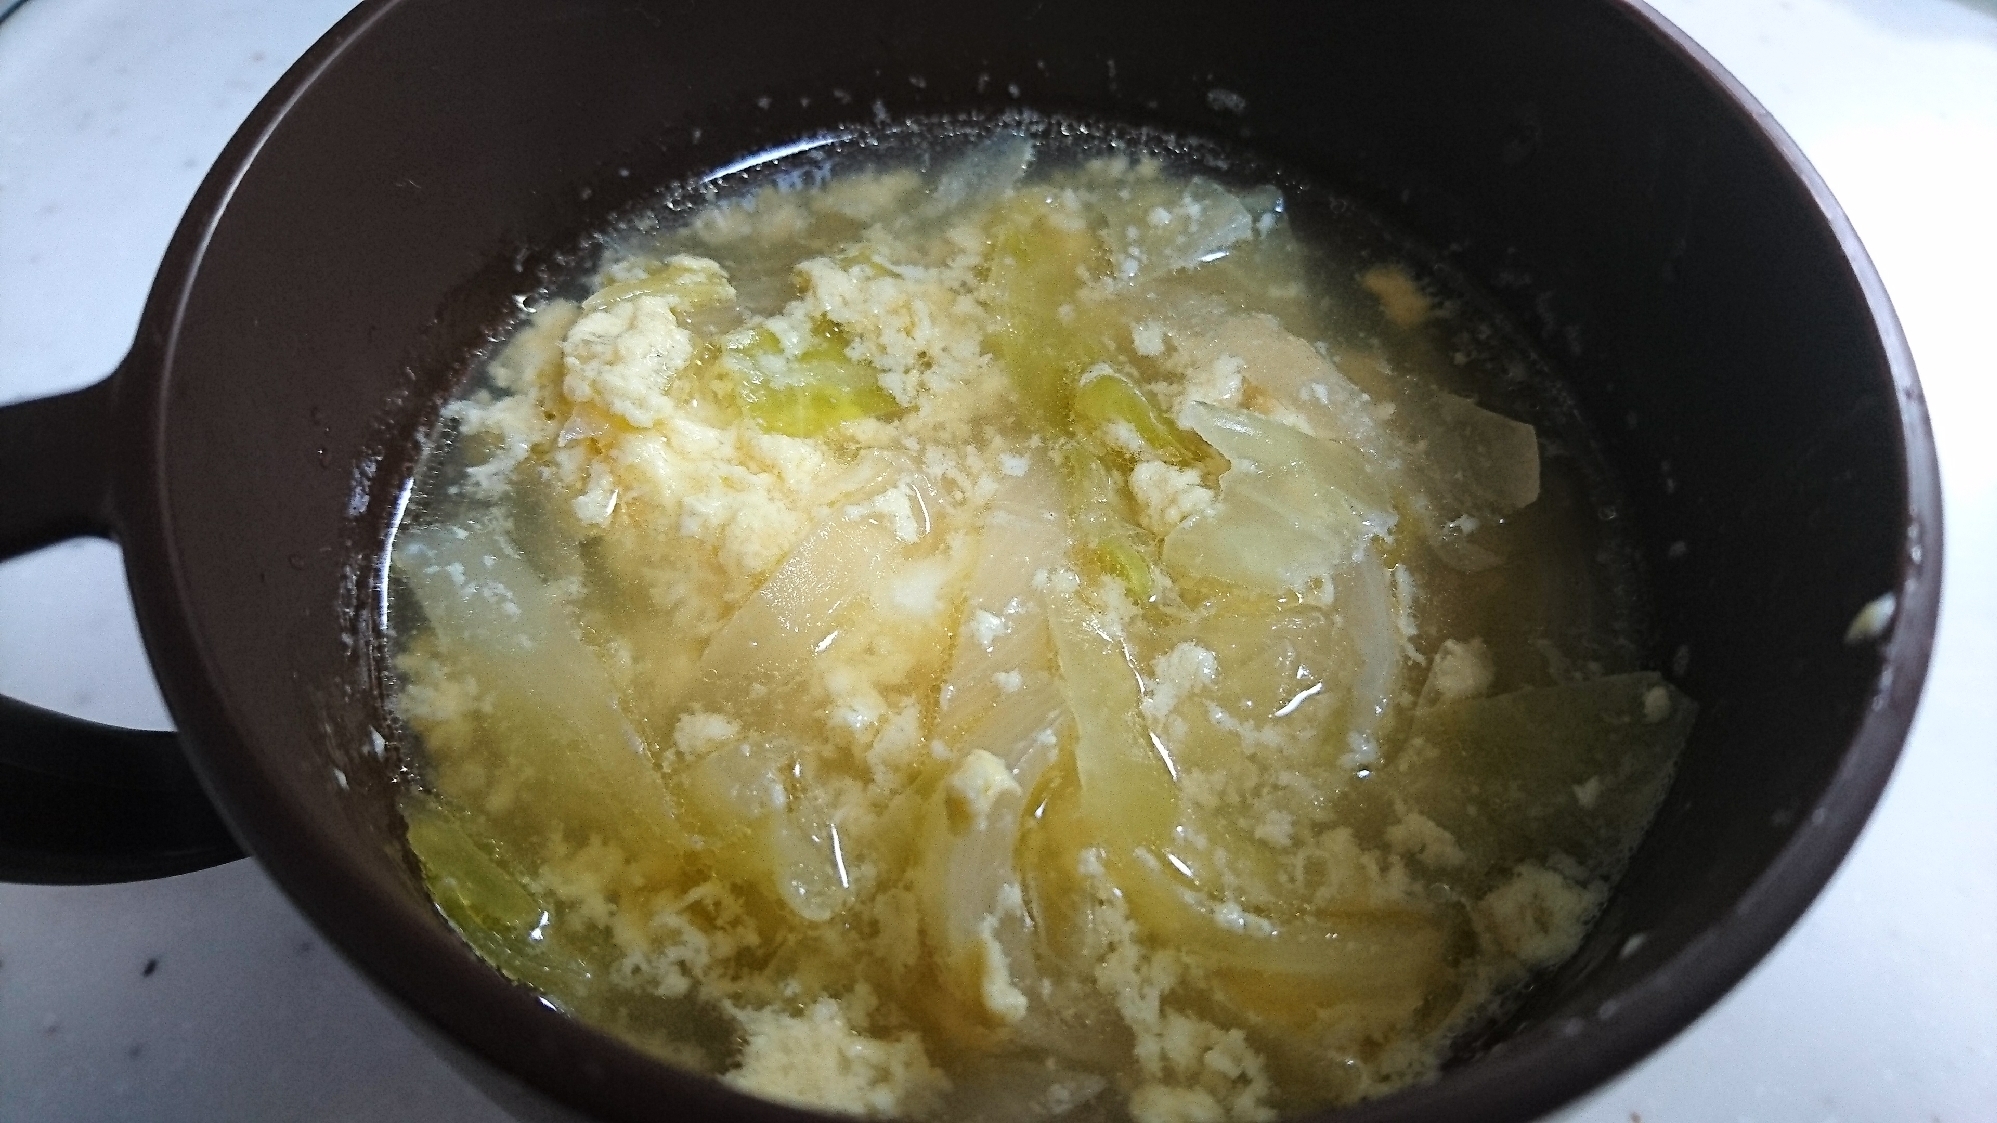 卵入り野菜スープ